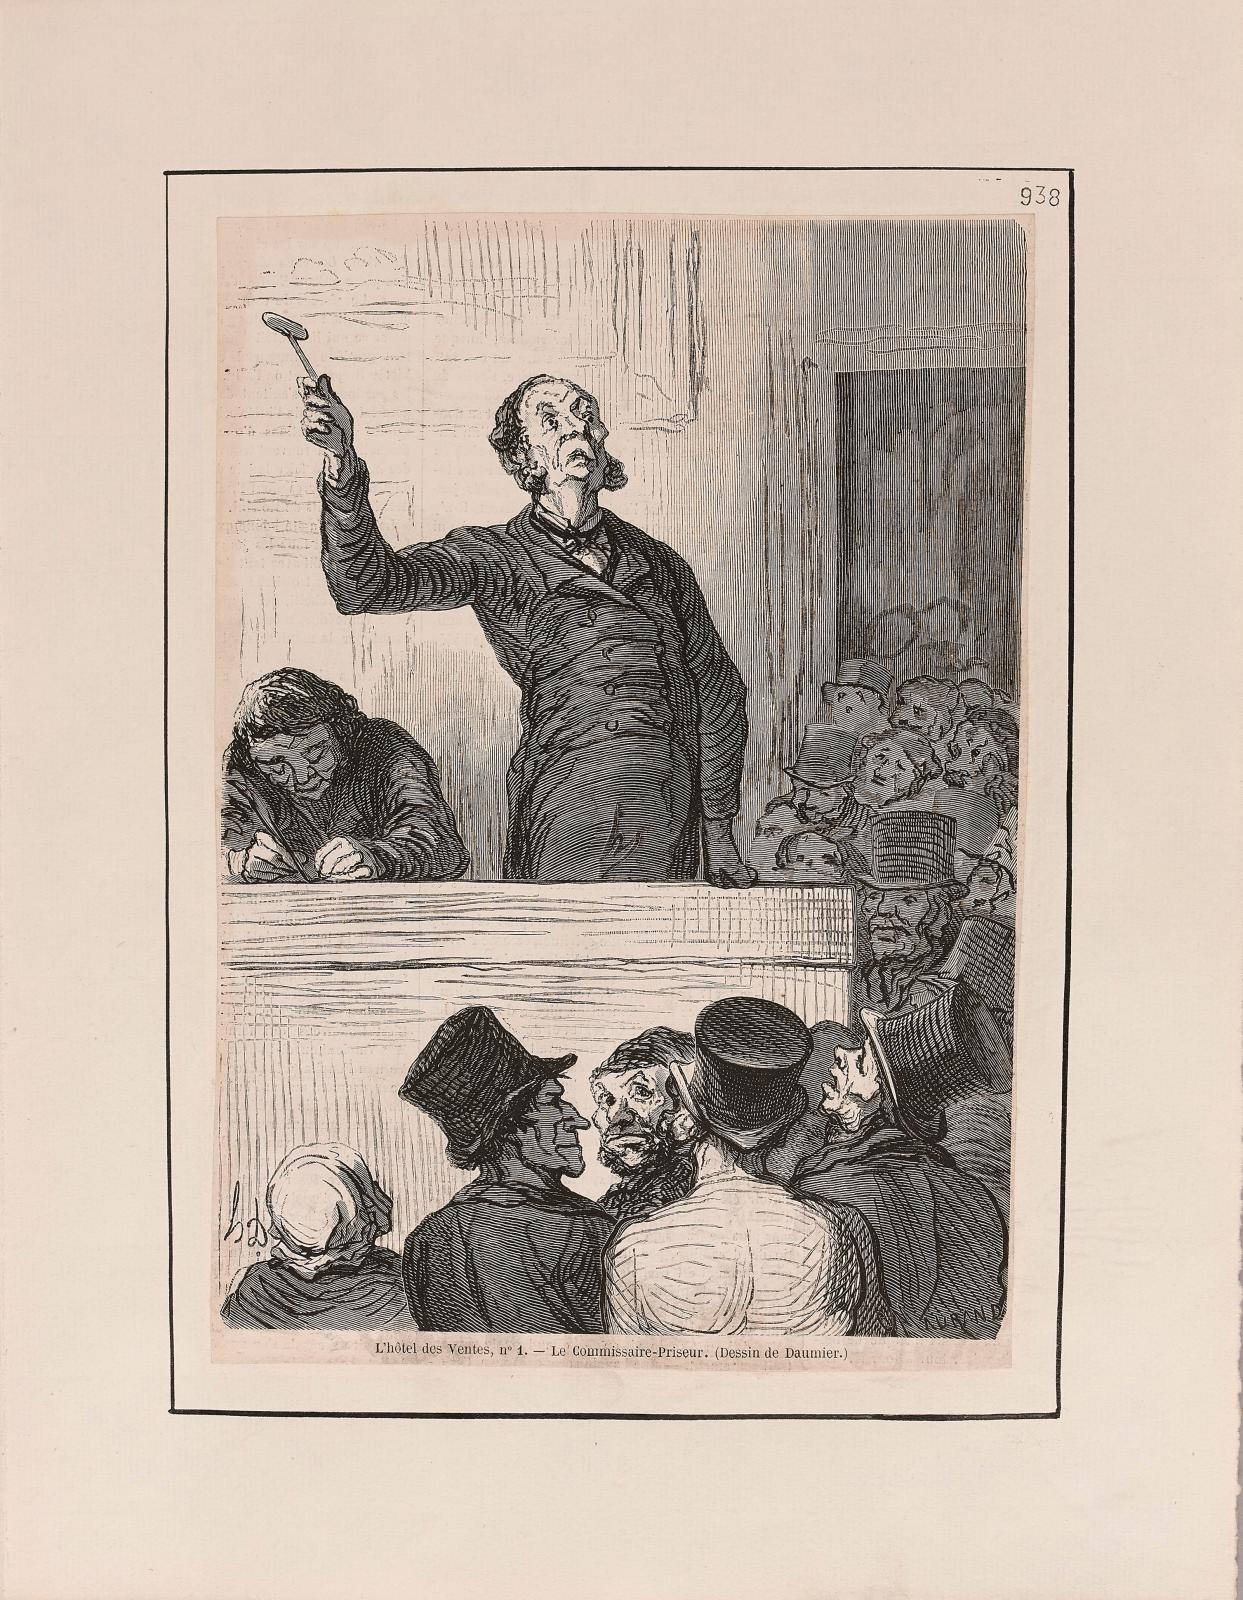 Honoré Daumier (1808-1879) et François Fabre (1797-1854), Némésis médicale illustrée (Paris, 1840), premier tirage de ce recueil de satire